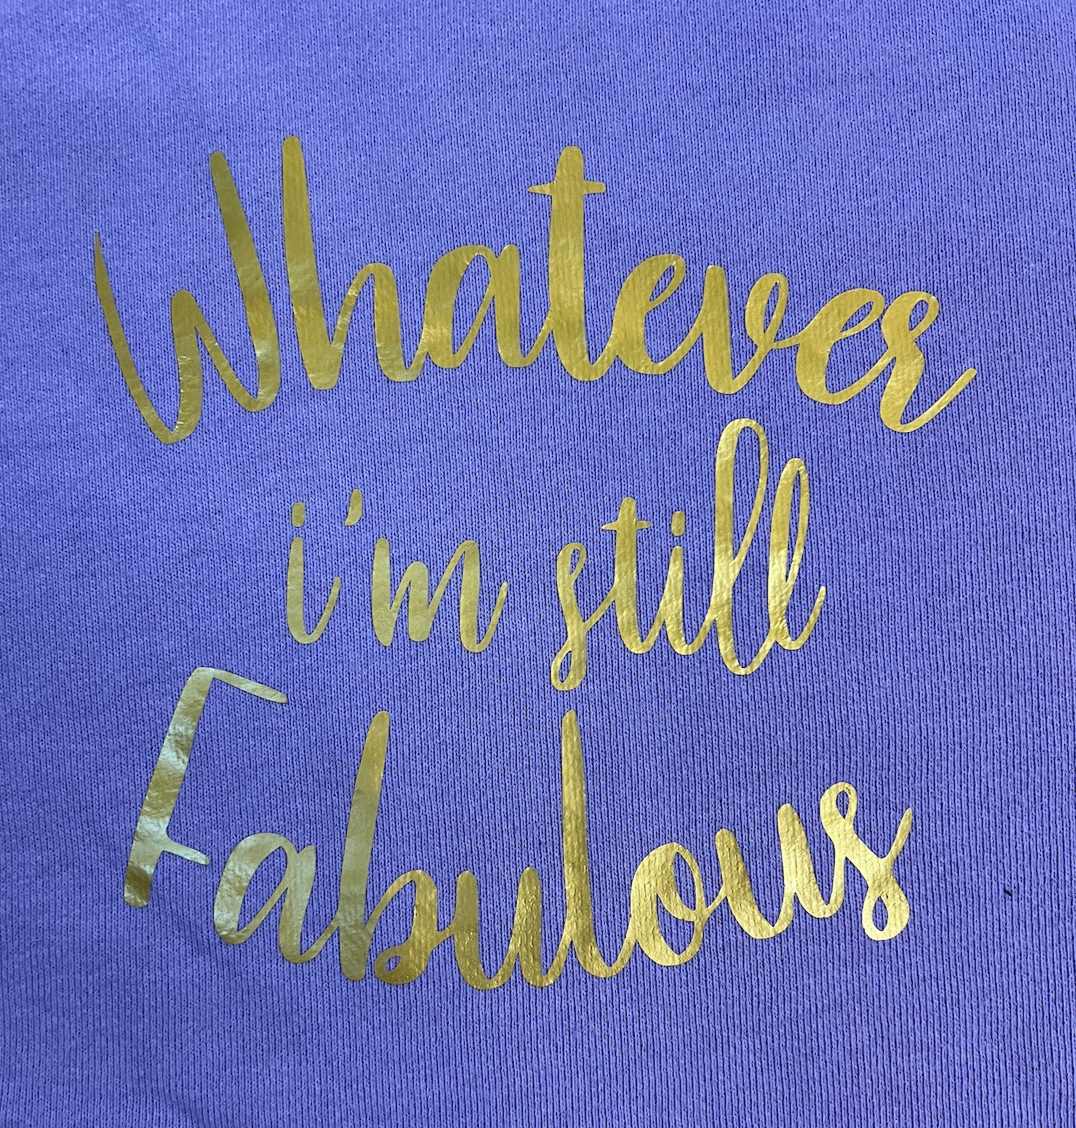 Whatever I'm Still Fabulous